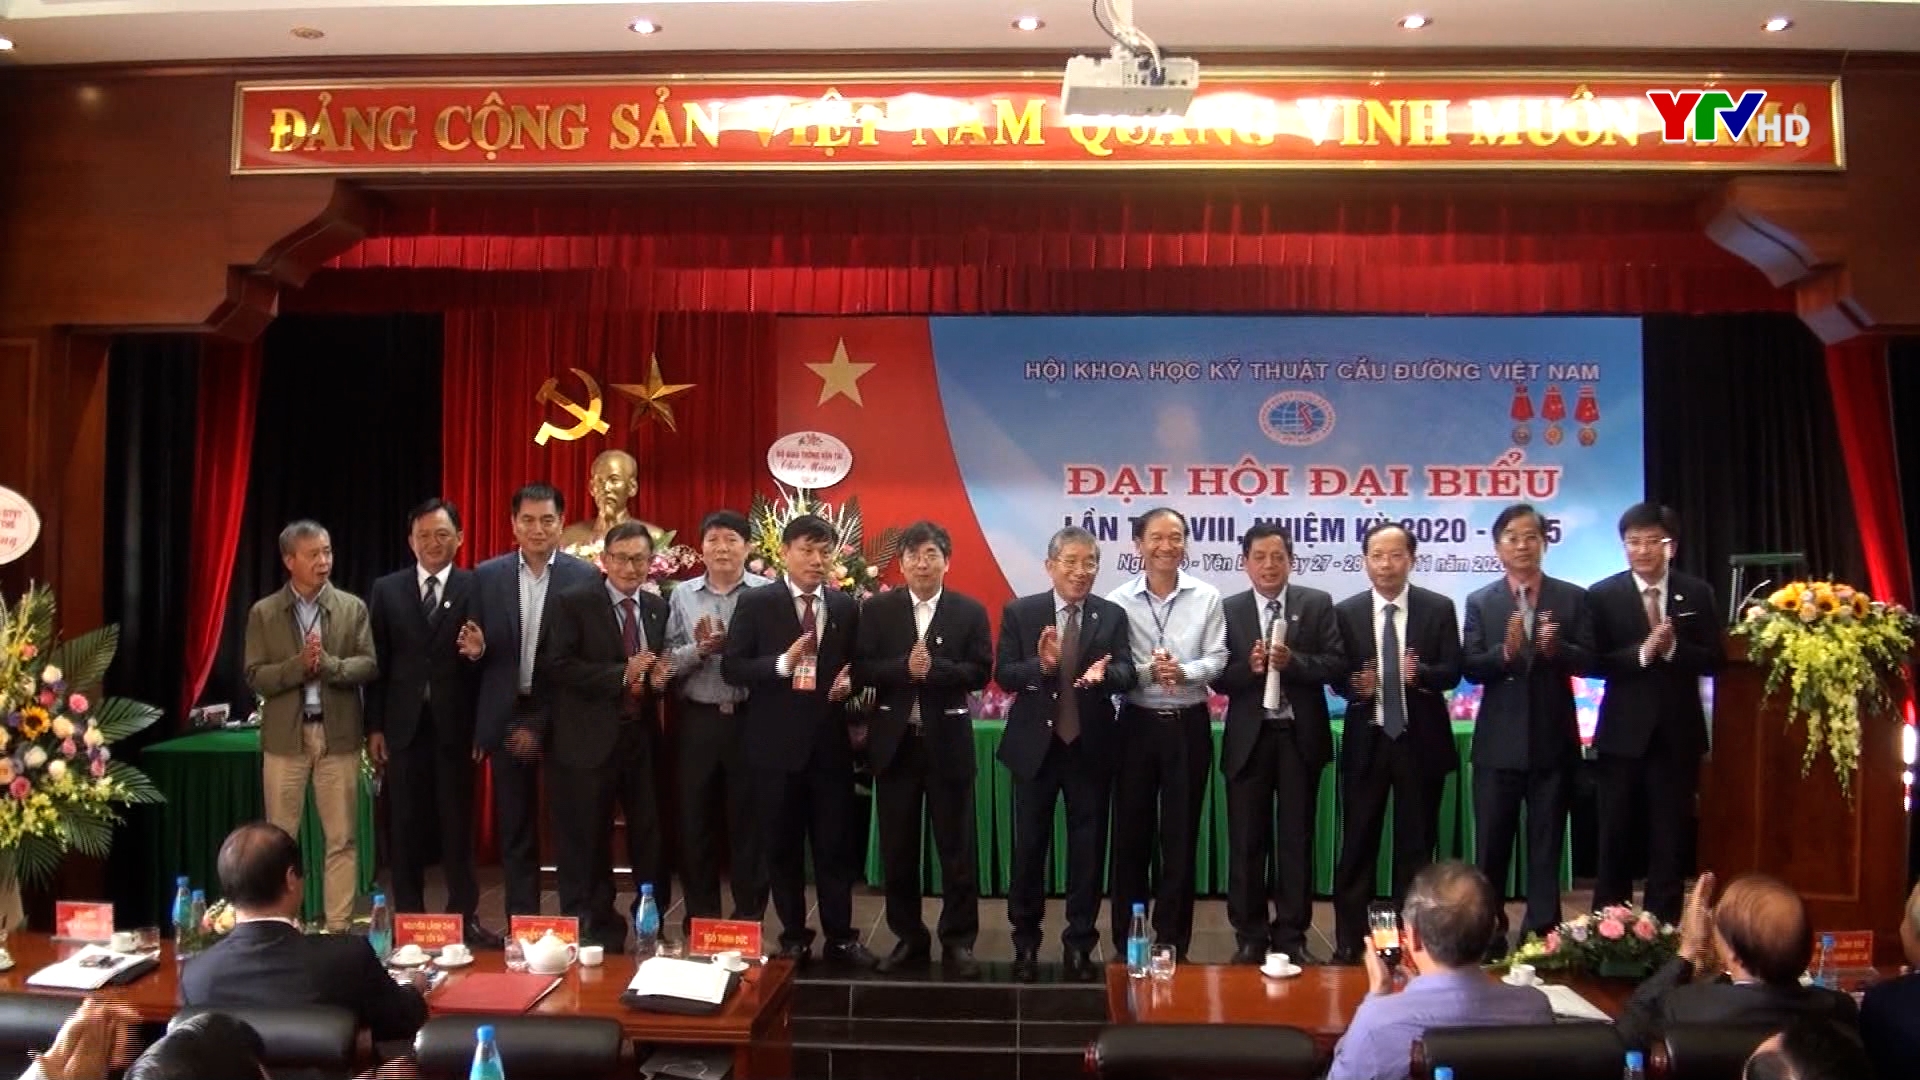 Đại hội Đại biểu toàn quốc Hội Khoa học kỹ thuật cầu đường Việt Nam nhiệm kỳ 2020 - 2025